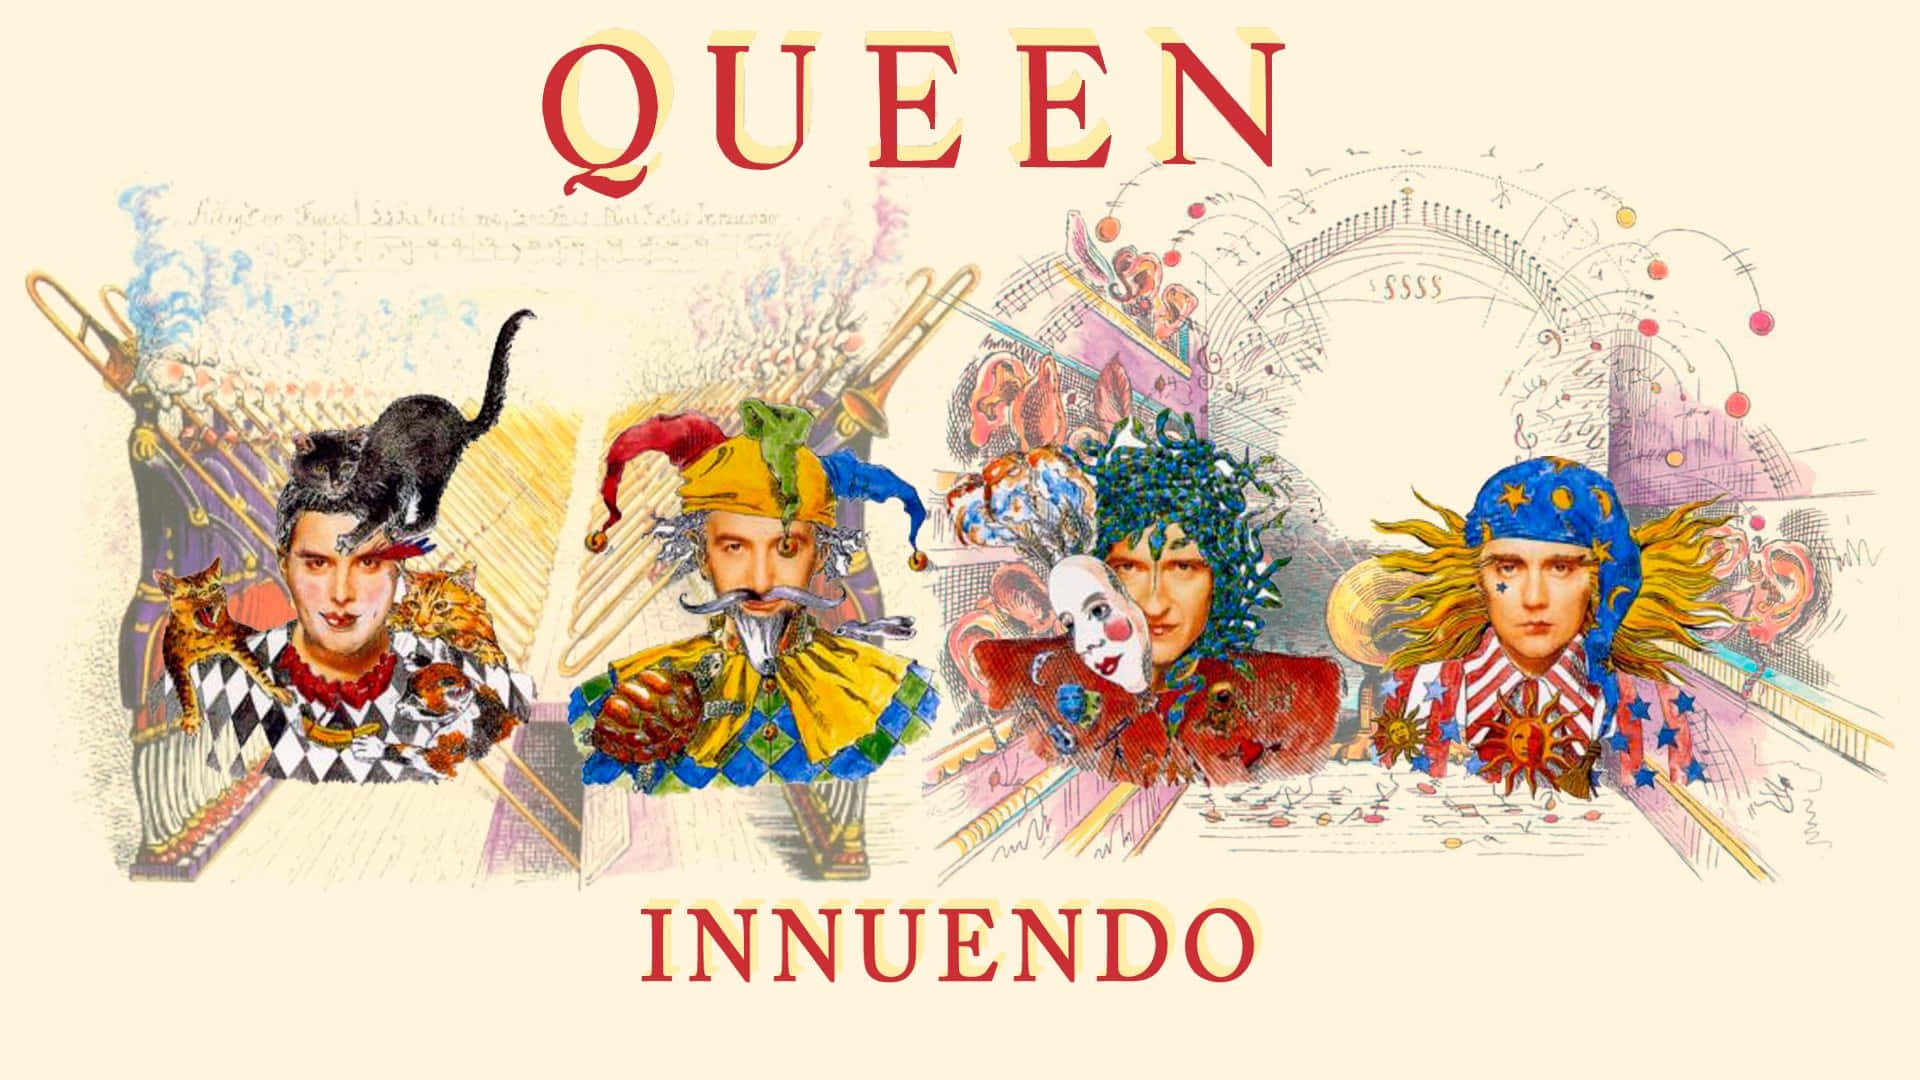 Feiernsie Rock & Roll-royalty Mit Queen